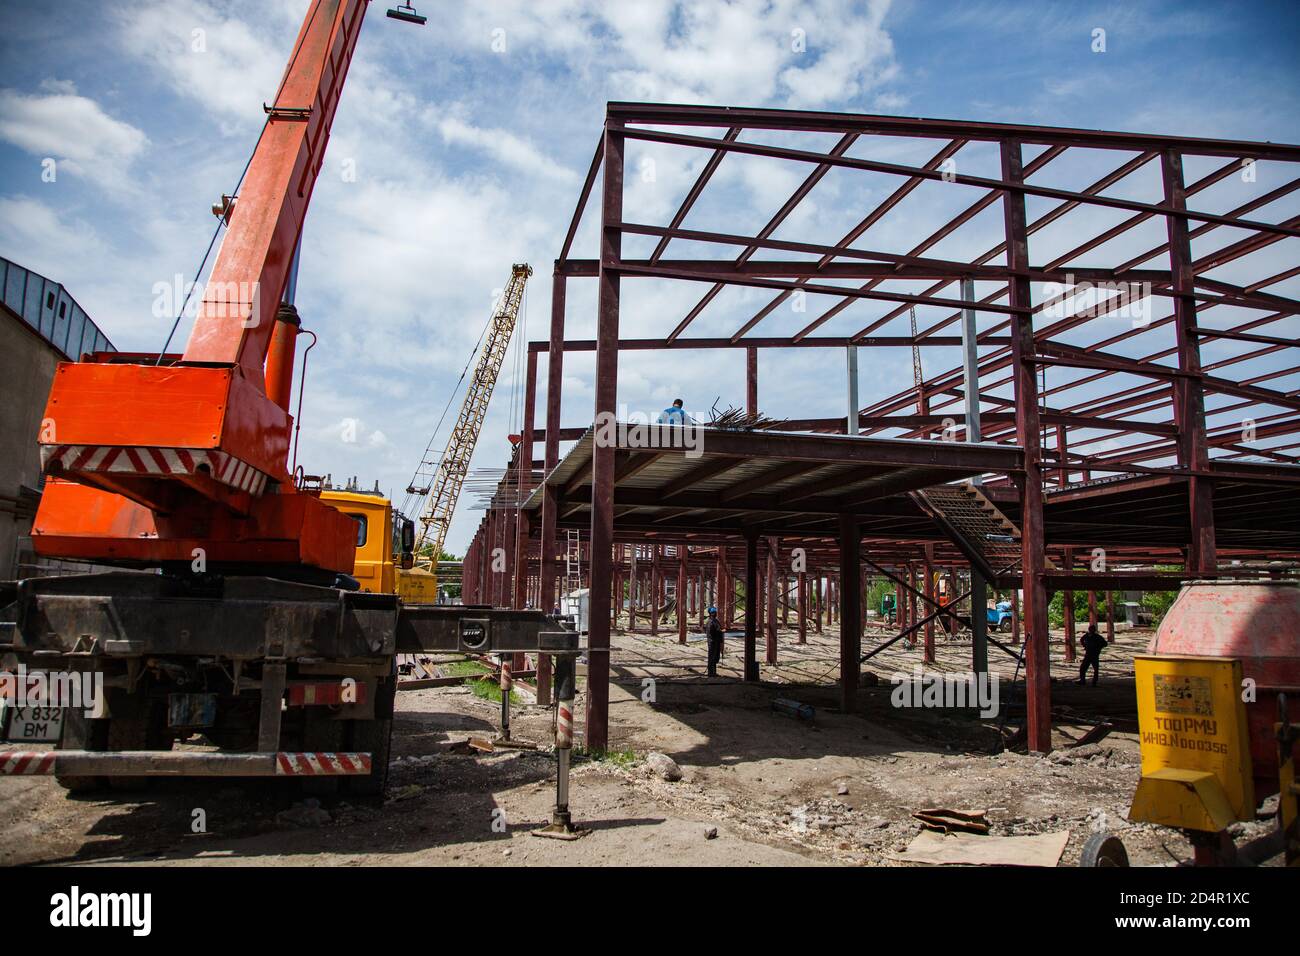 Shymkent/Kazakhstan - Aprile 27 2012: Costruzione di un nuovo edificio industriale. Gru mobile e struttura metallica con lavoratori. Foto Stock